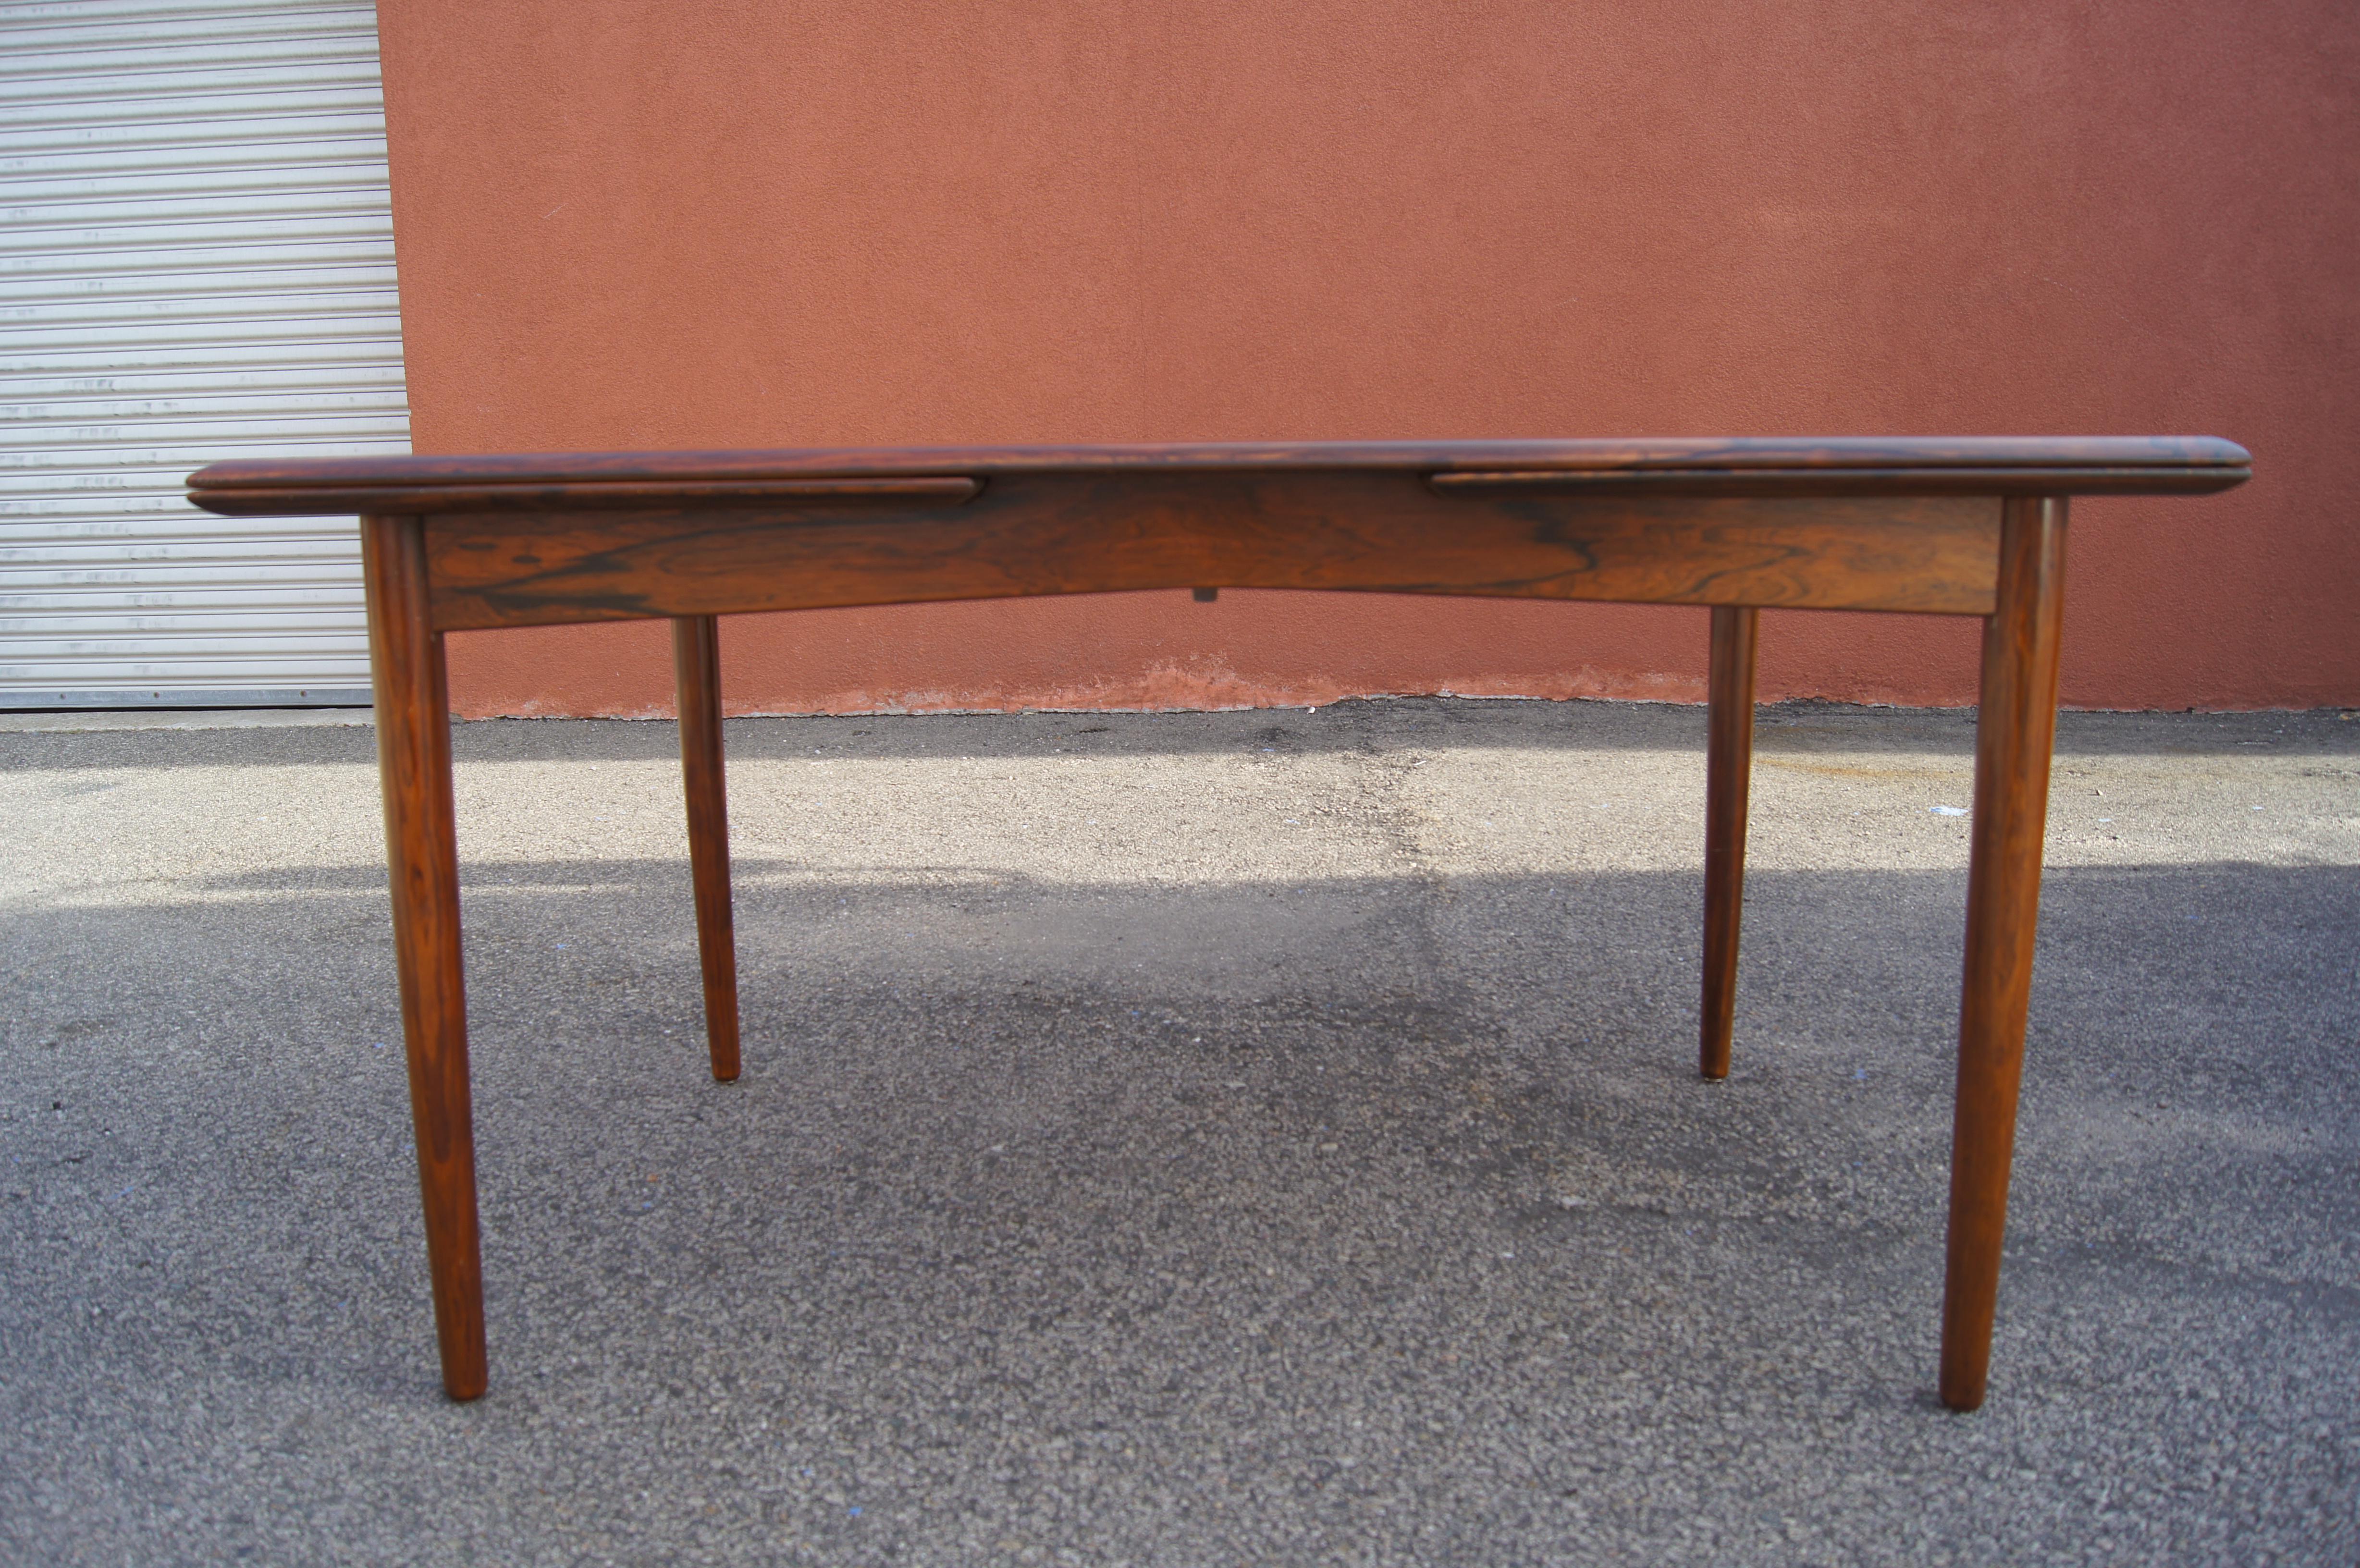 Cette table à manger en bois de rose est un merveilleux exemple du modernisme danois, équilibrant des lignes épurées et une richesse organique. Reposant sur de fins pieds effilés, le plateau au grain vif dissimule deux feuilles internes de 21,5